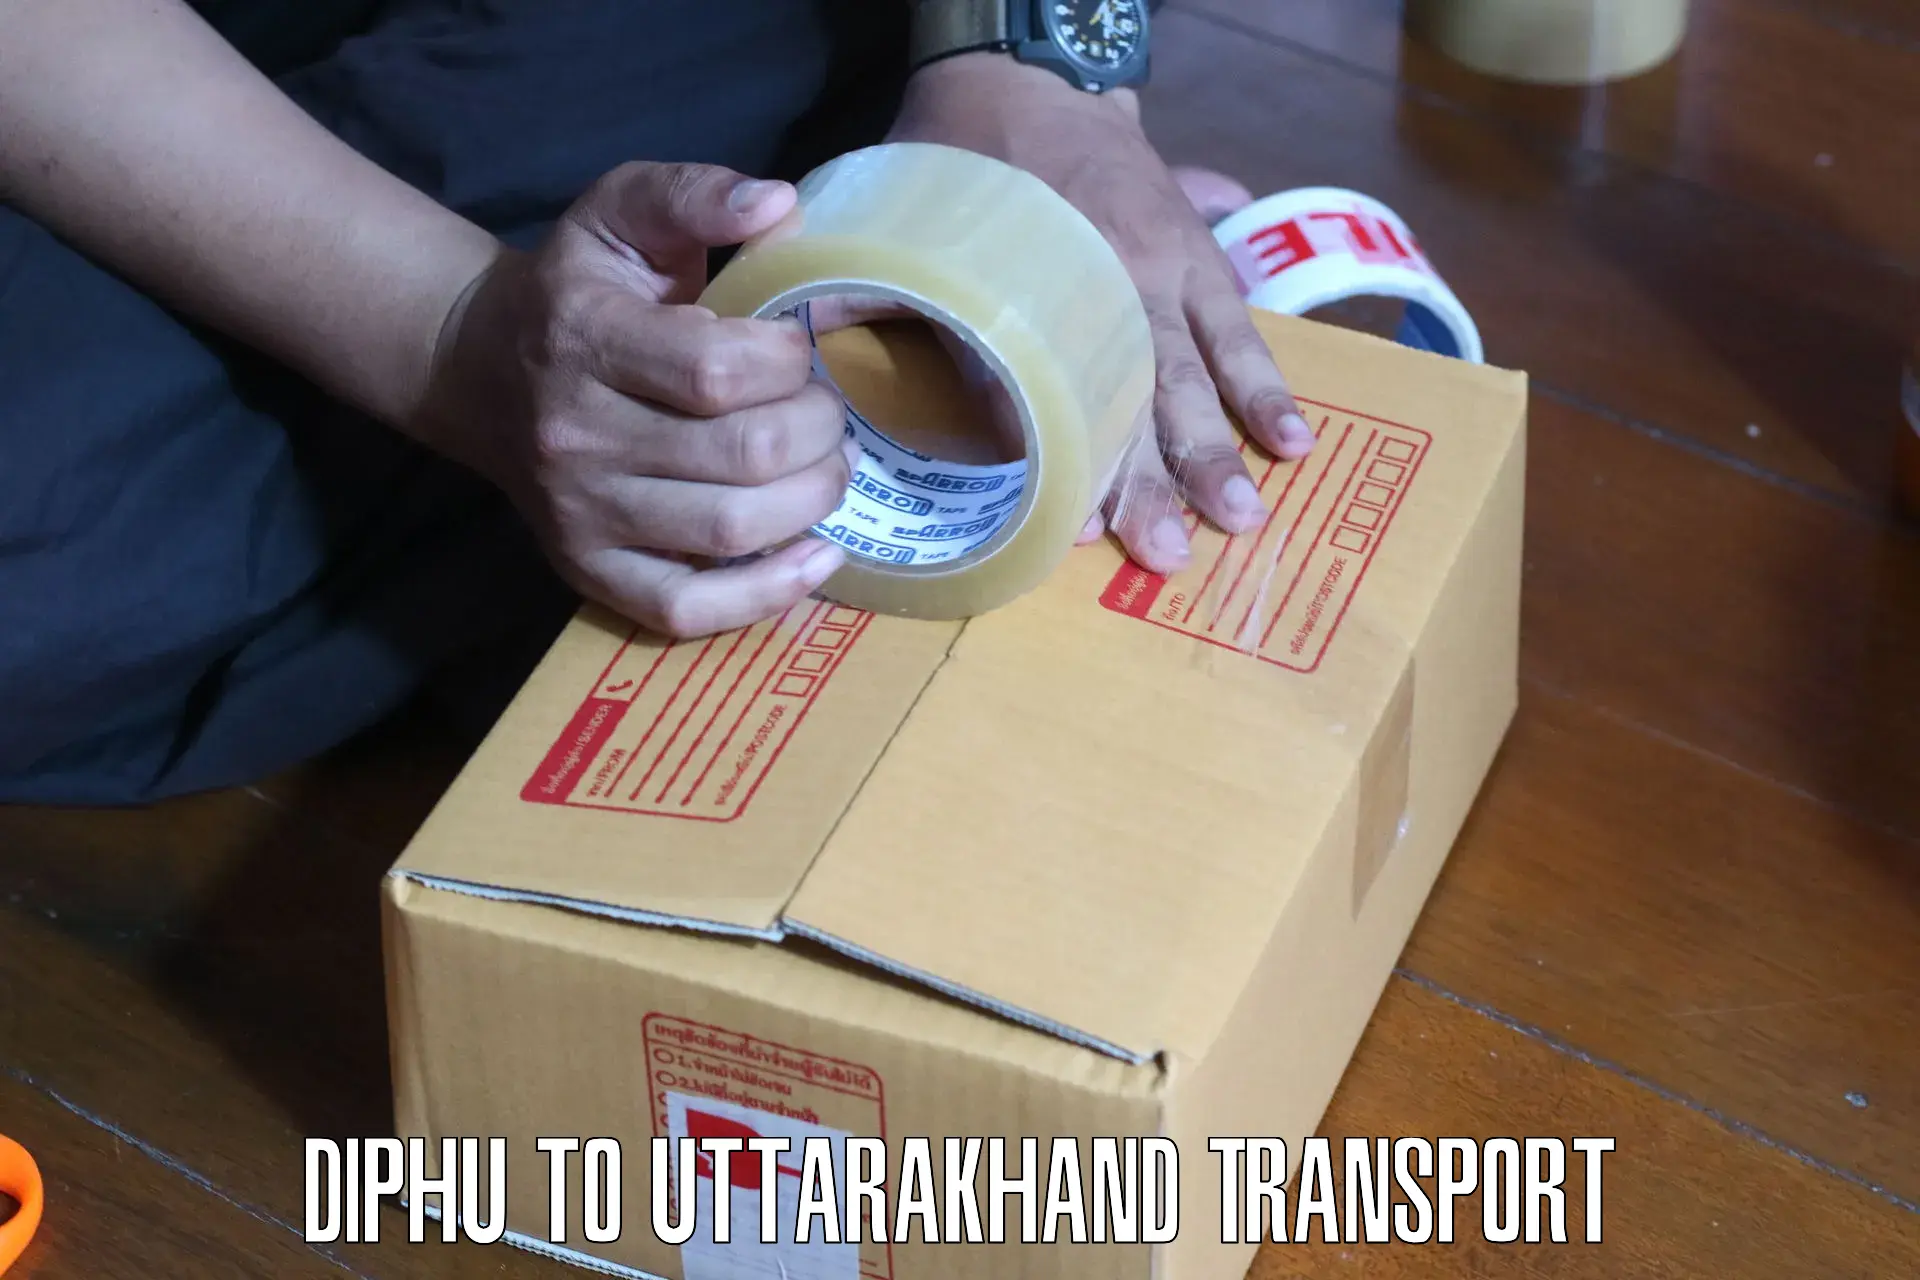 Pick up transport service Diphu to Uttarkashi